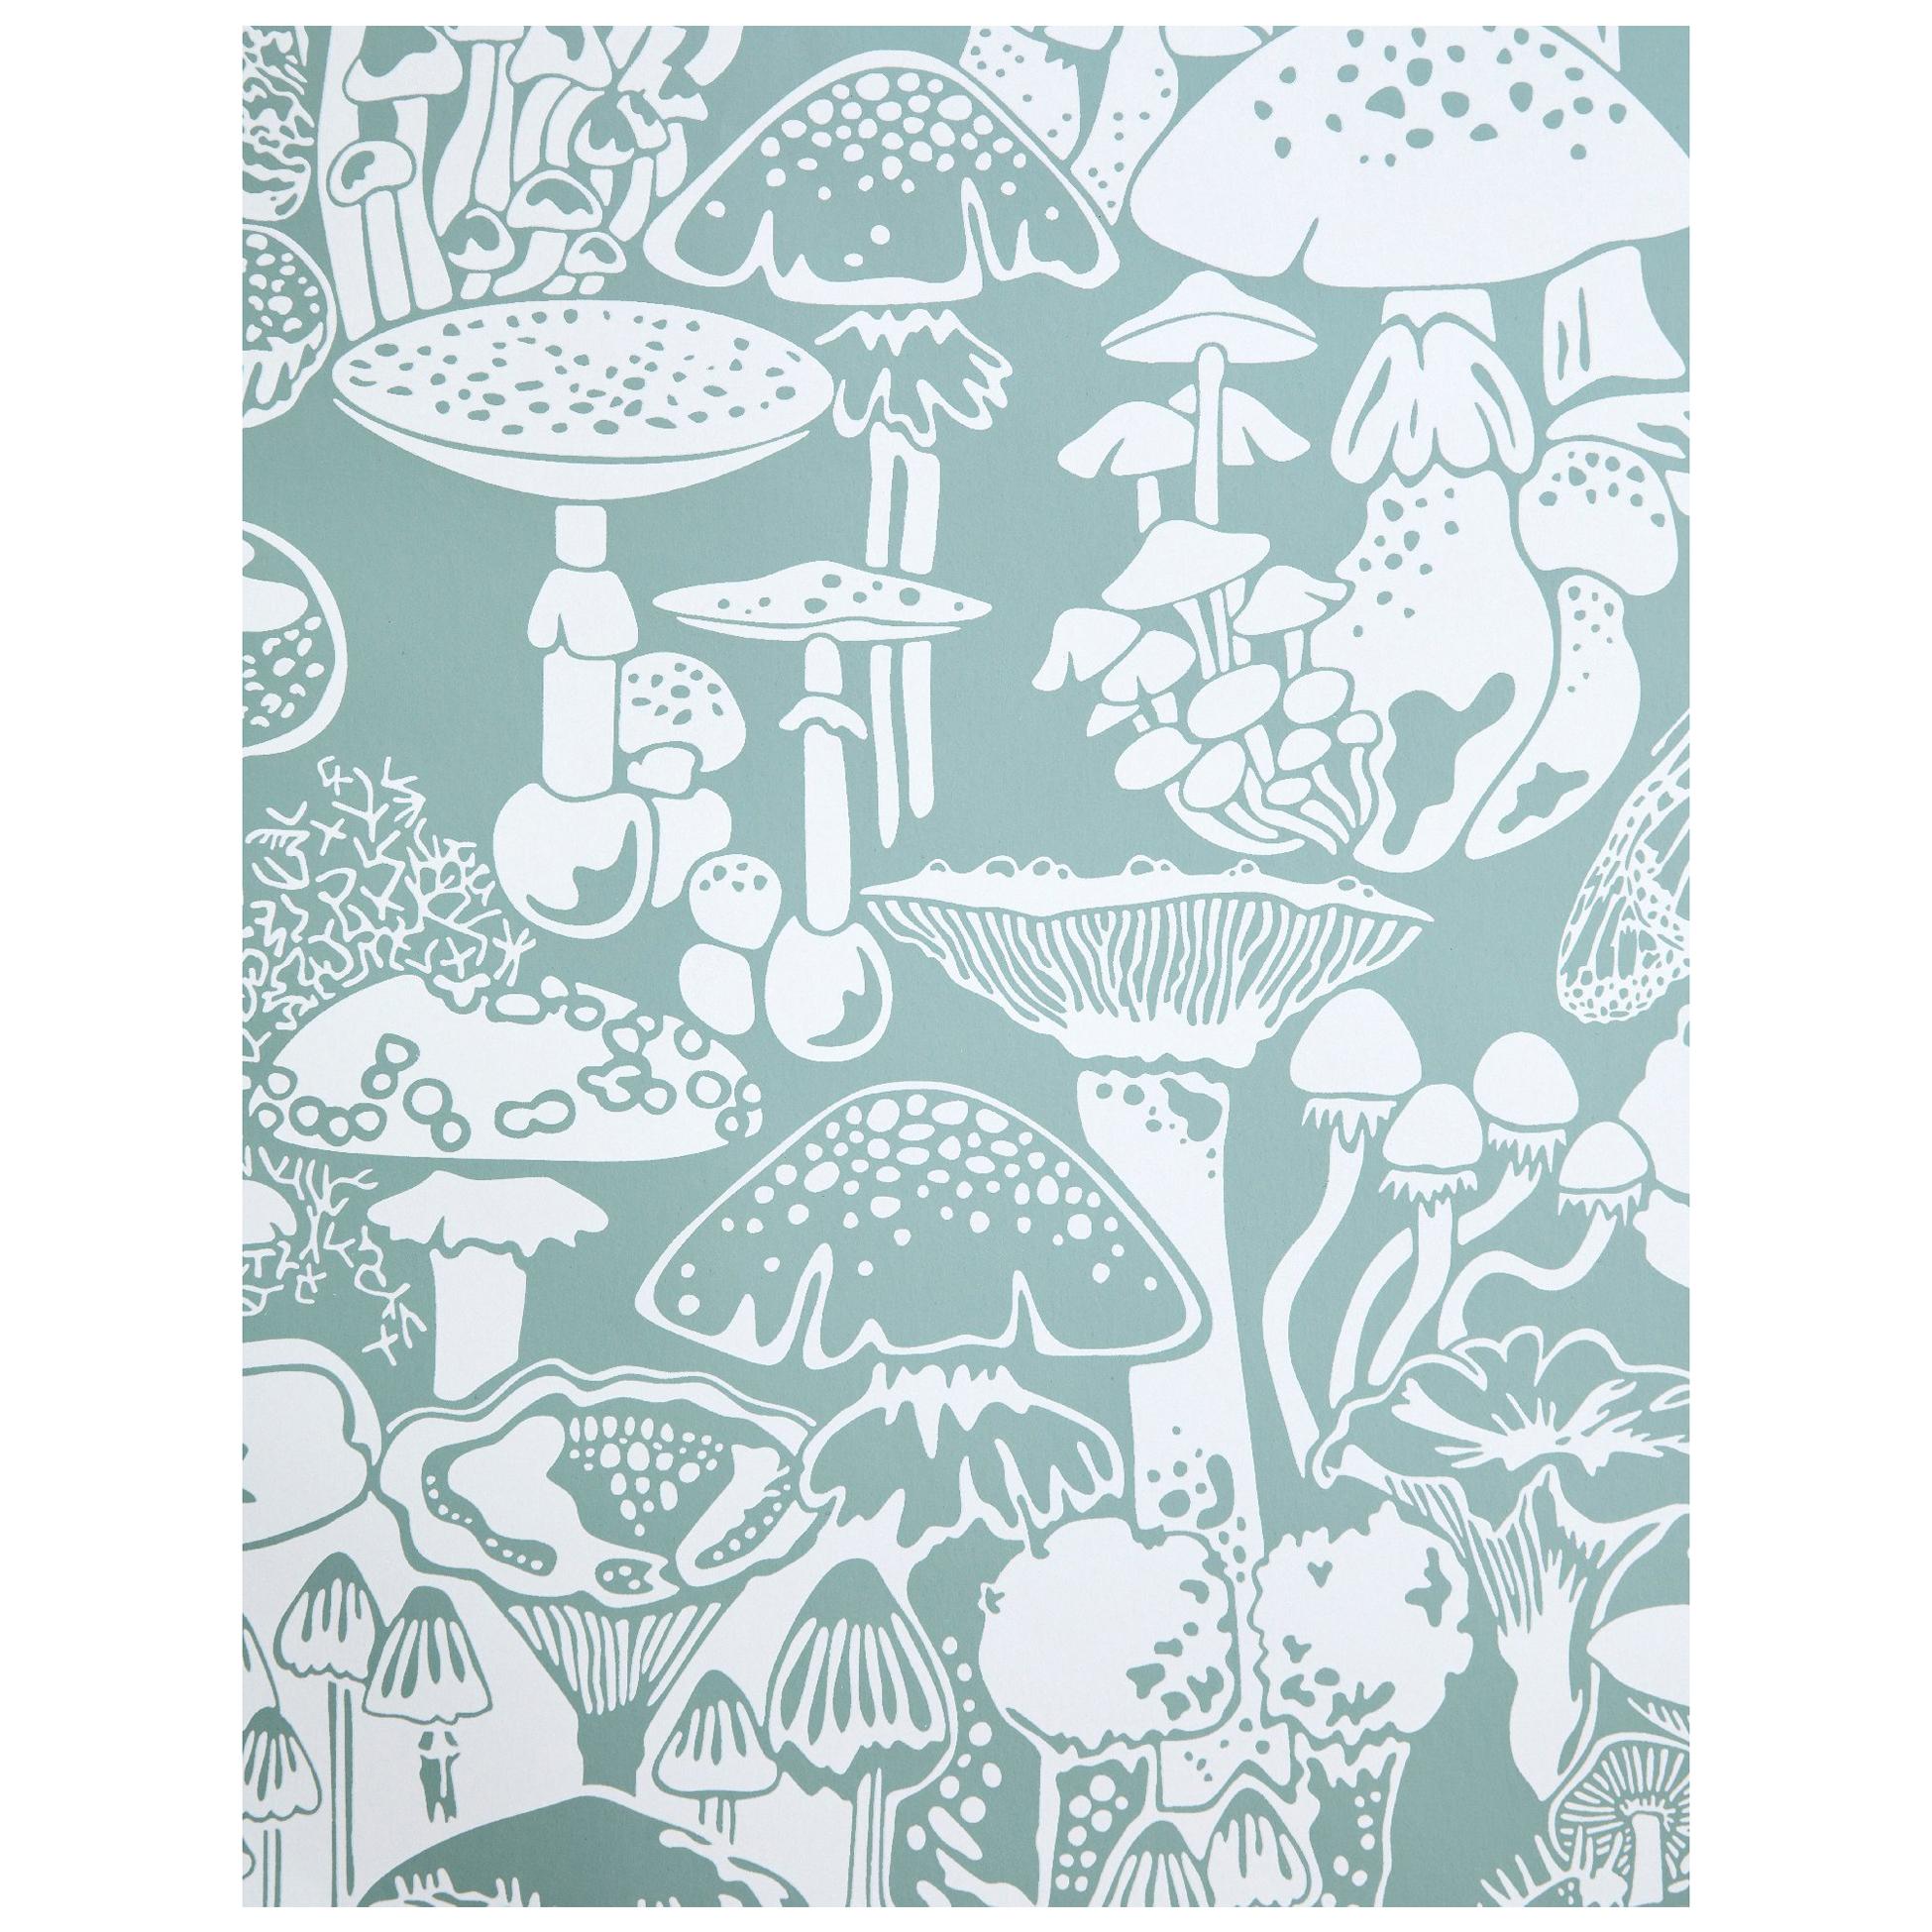 Mushroom City Designer Wallpaper In Color Botanica Soft White On